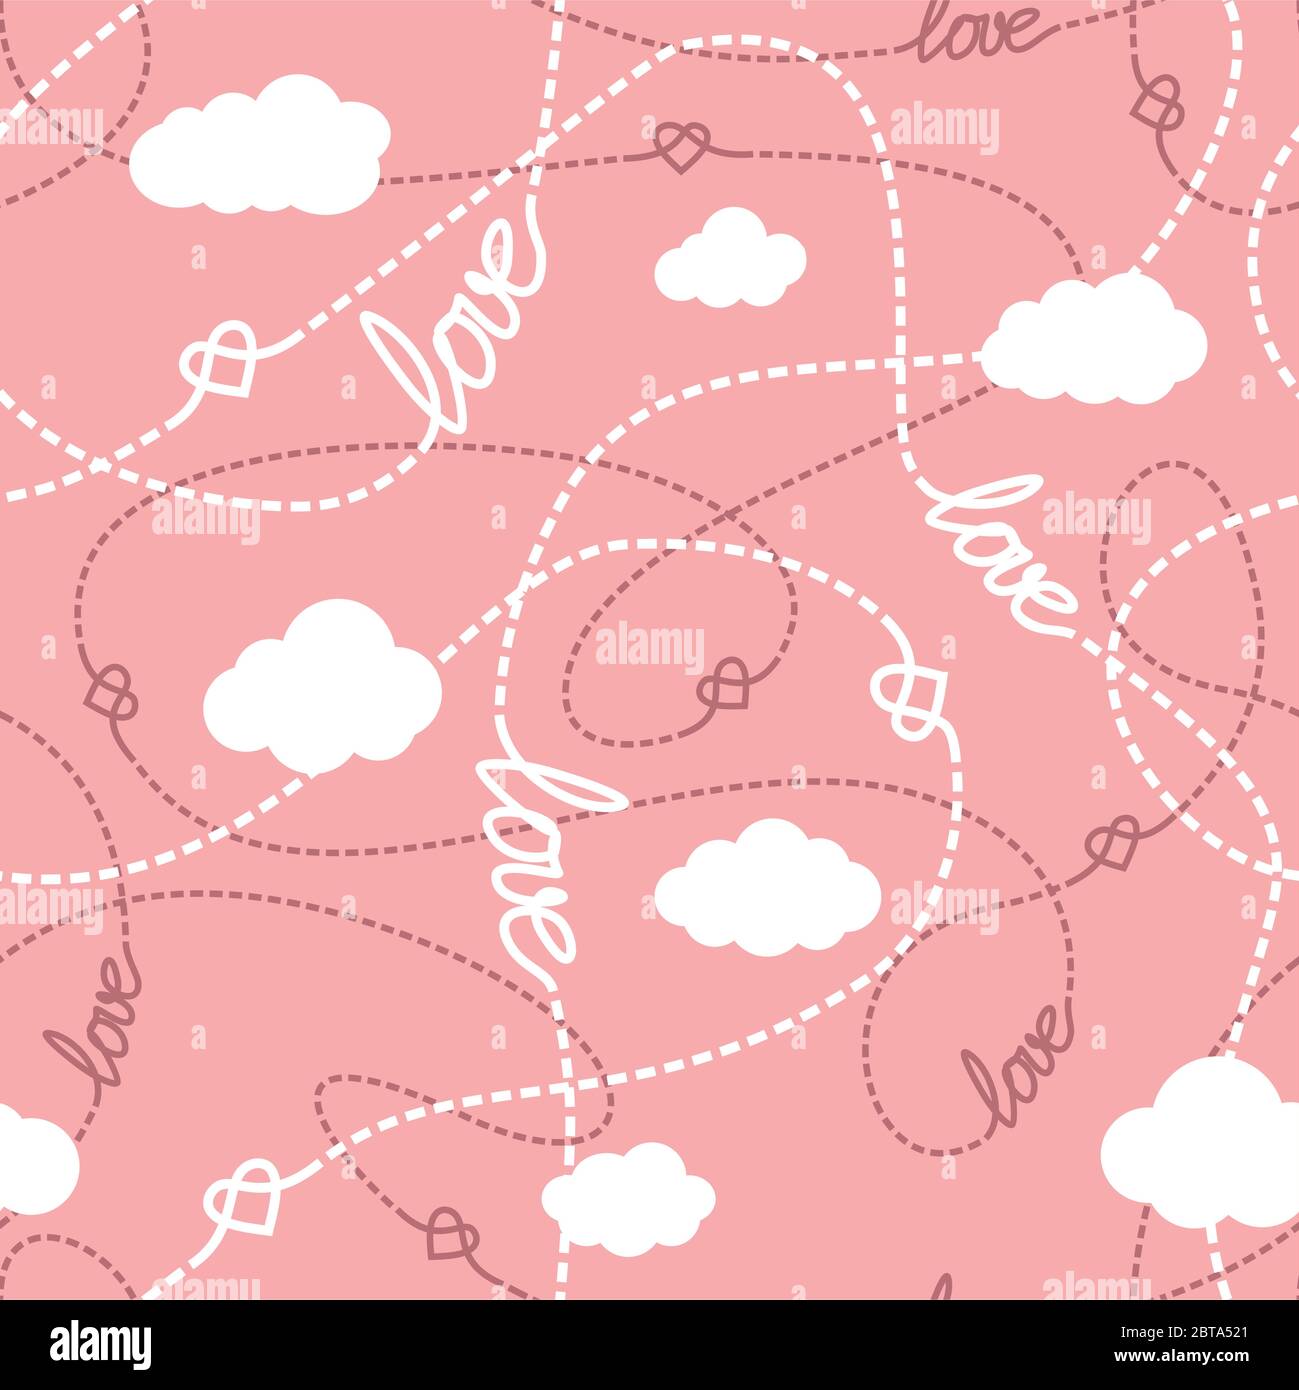 Vektor-Nahtloses Muster mit Liebe Worte, Herzen, verworrene Linien und Wolken. Wiederholende abstrakte Hintergrund für romantisches Design. Liebe konzeptuelle Textur. Stock Vektor